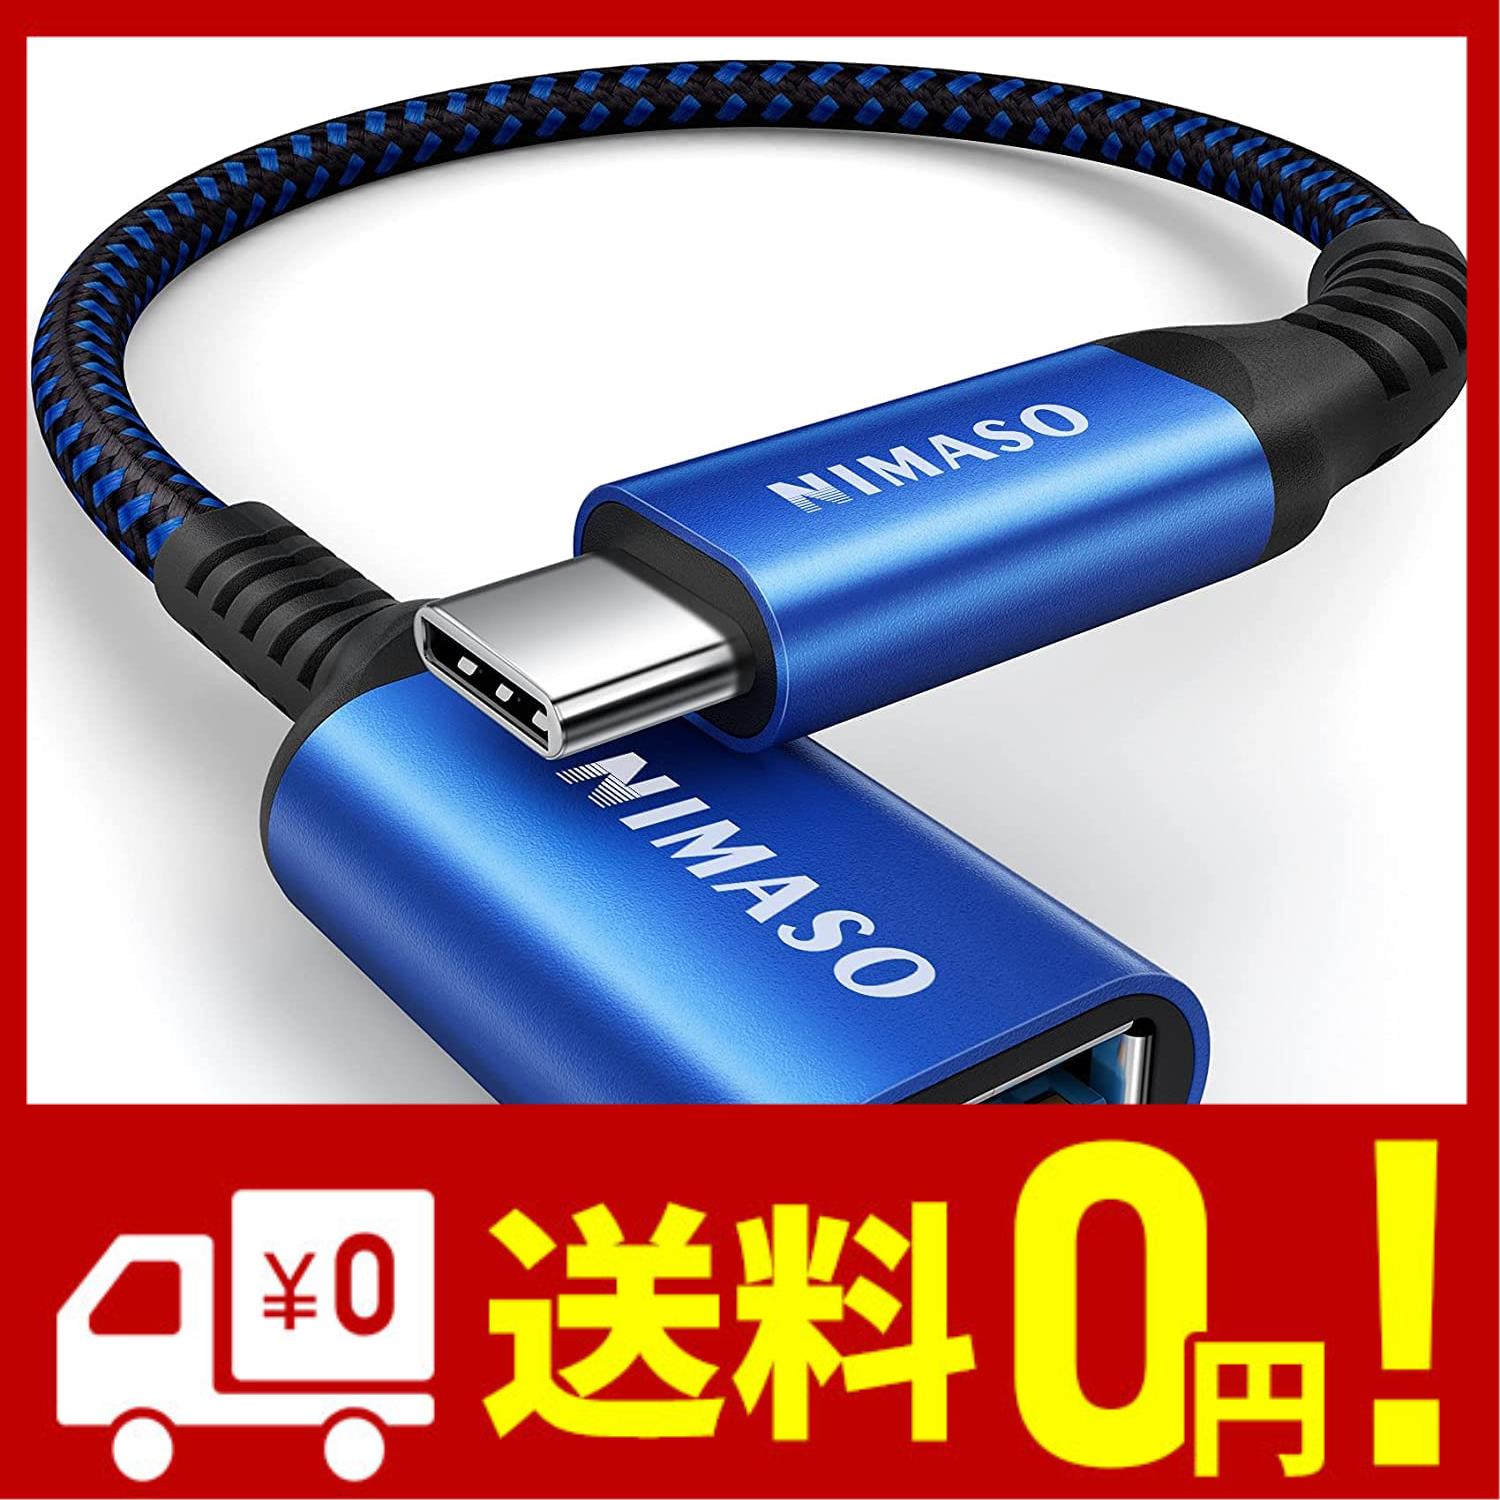 NIMASO USB C 変換 アダプタ Type C - USB 3.0 メス 20CM OTG ケーブル タイプC 変換コネクター 1本入り ブルー